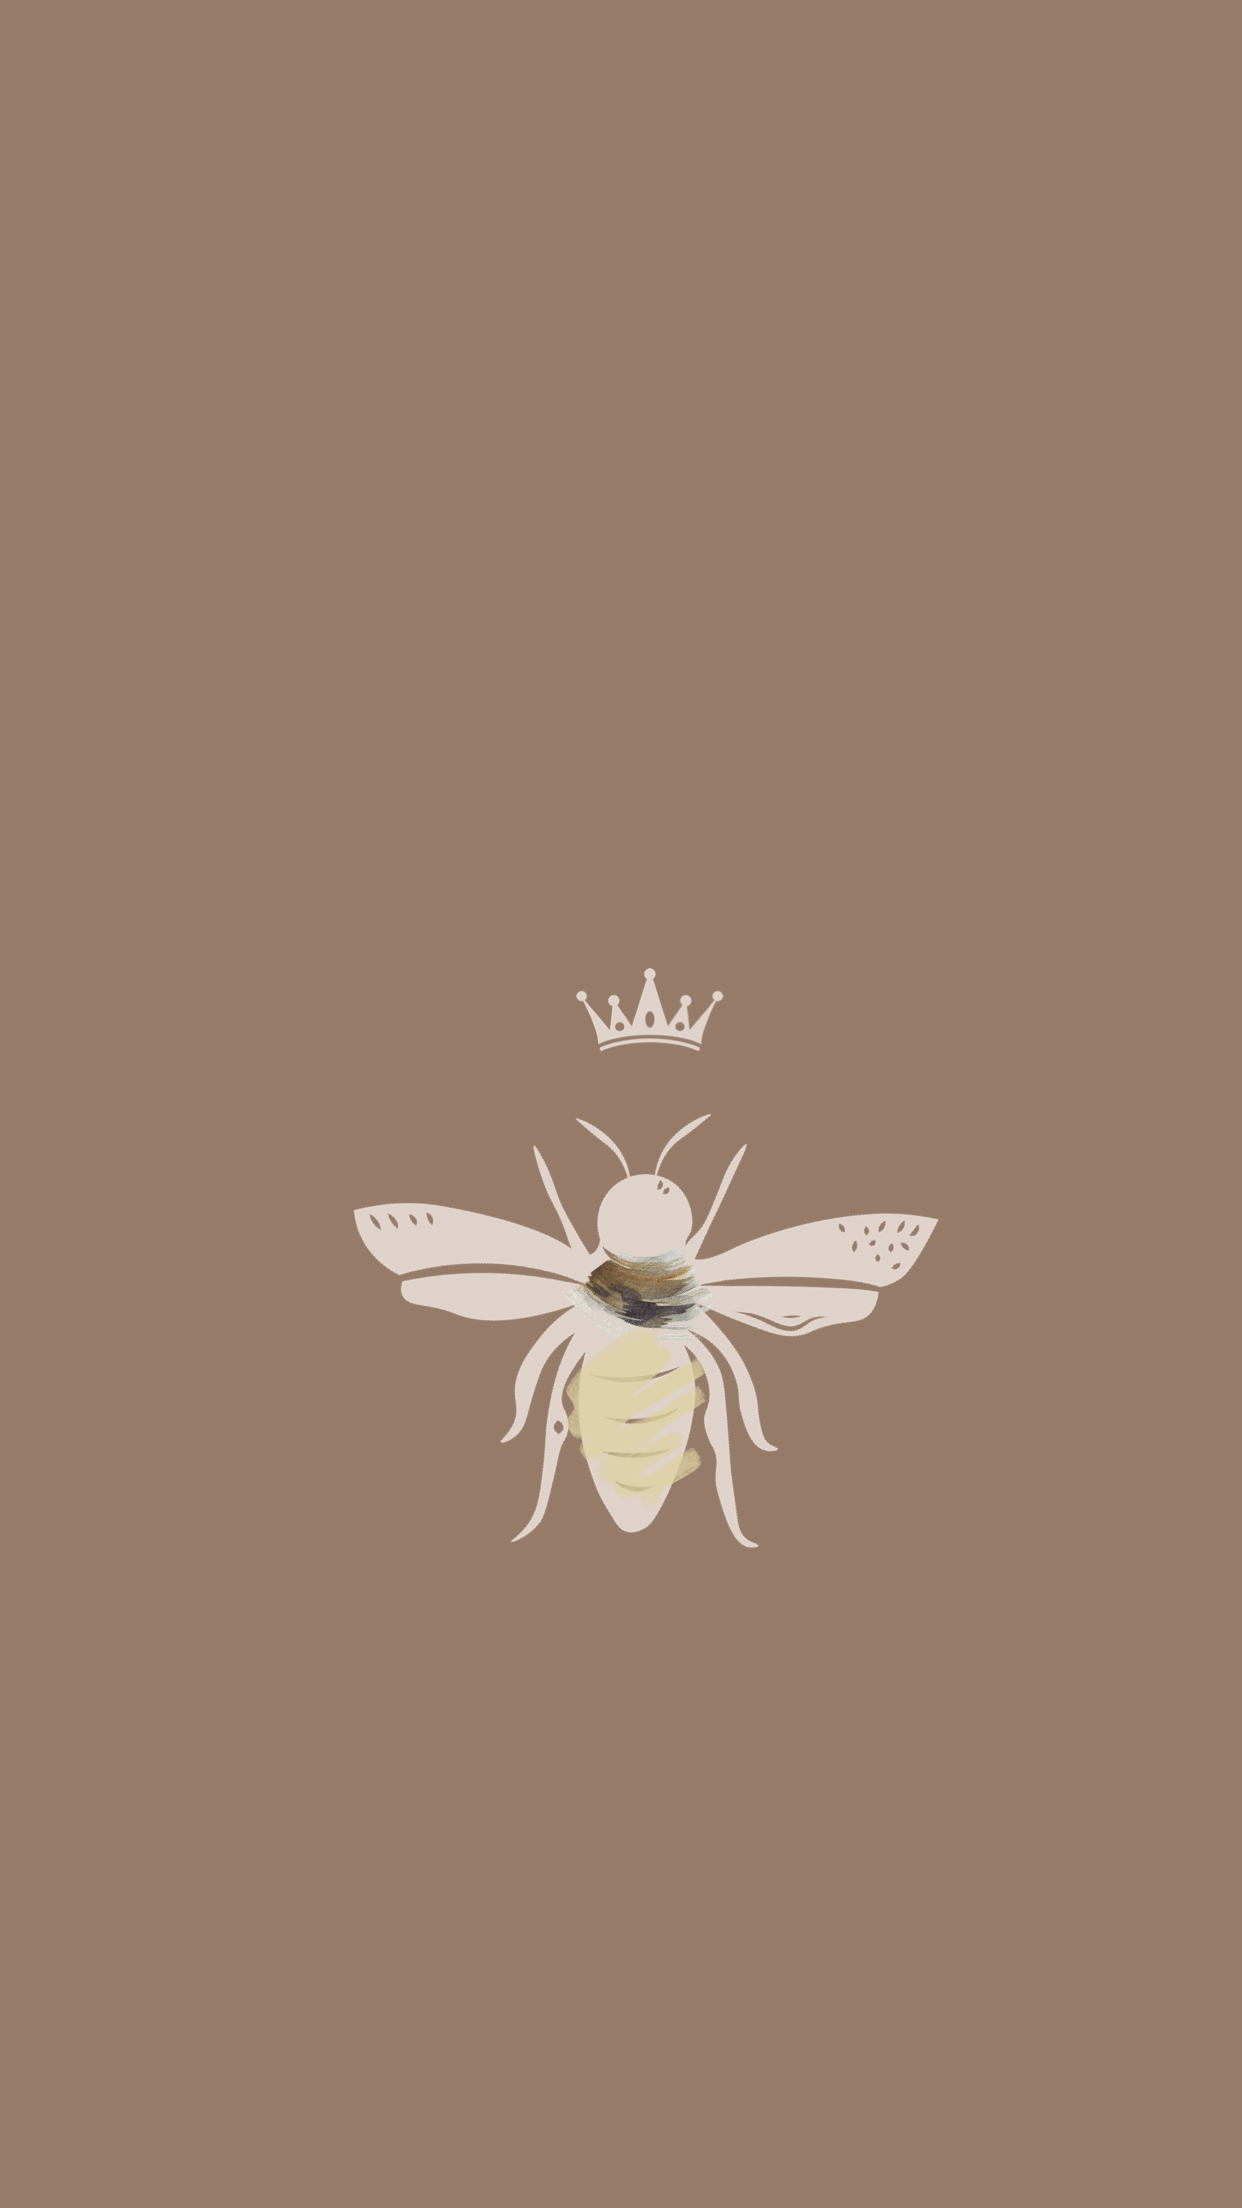 3d Wallpaper Iphone Bee Image Num 33